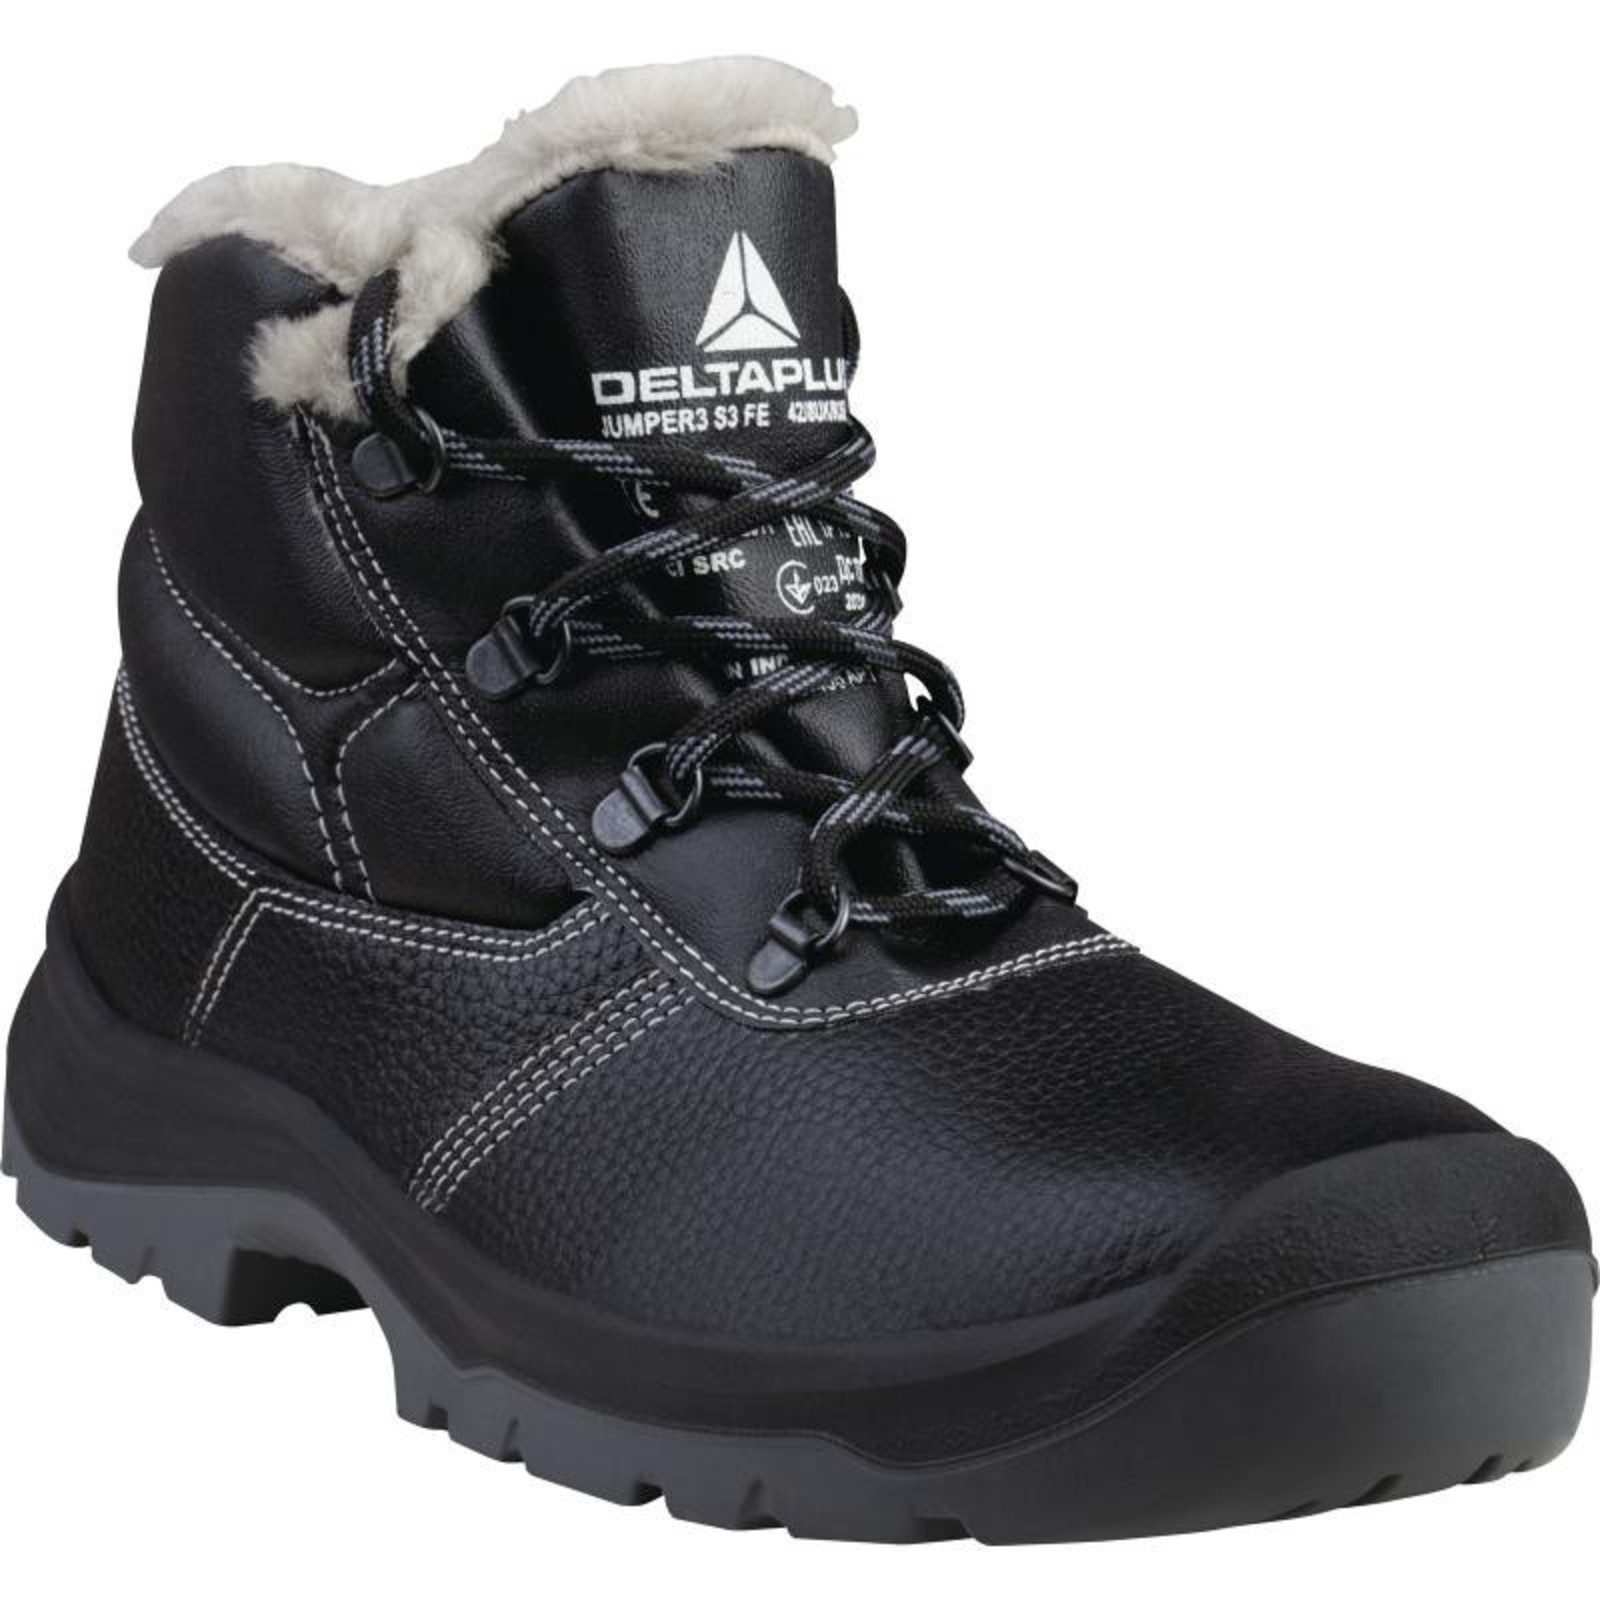 Zimná členková bezpečnostná obuv Delta Plus Jumper3 S3 - veľkosť: 40, farba: čierna